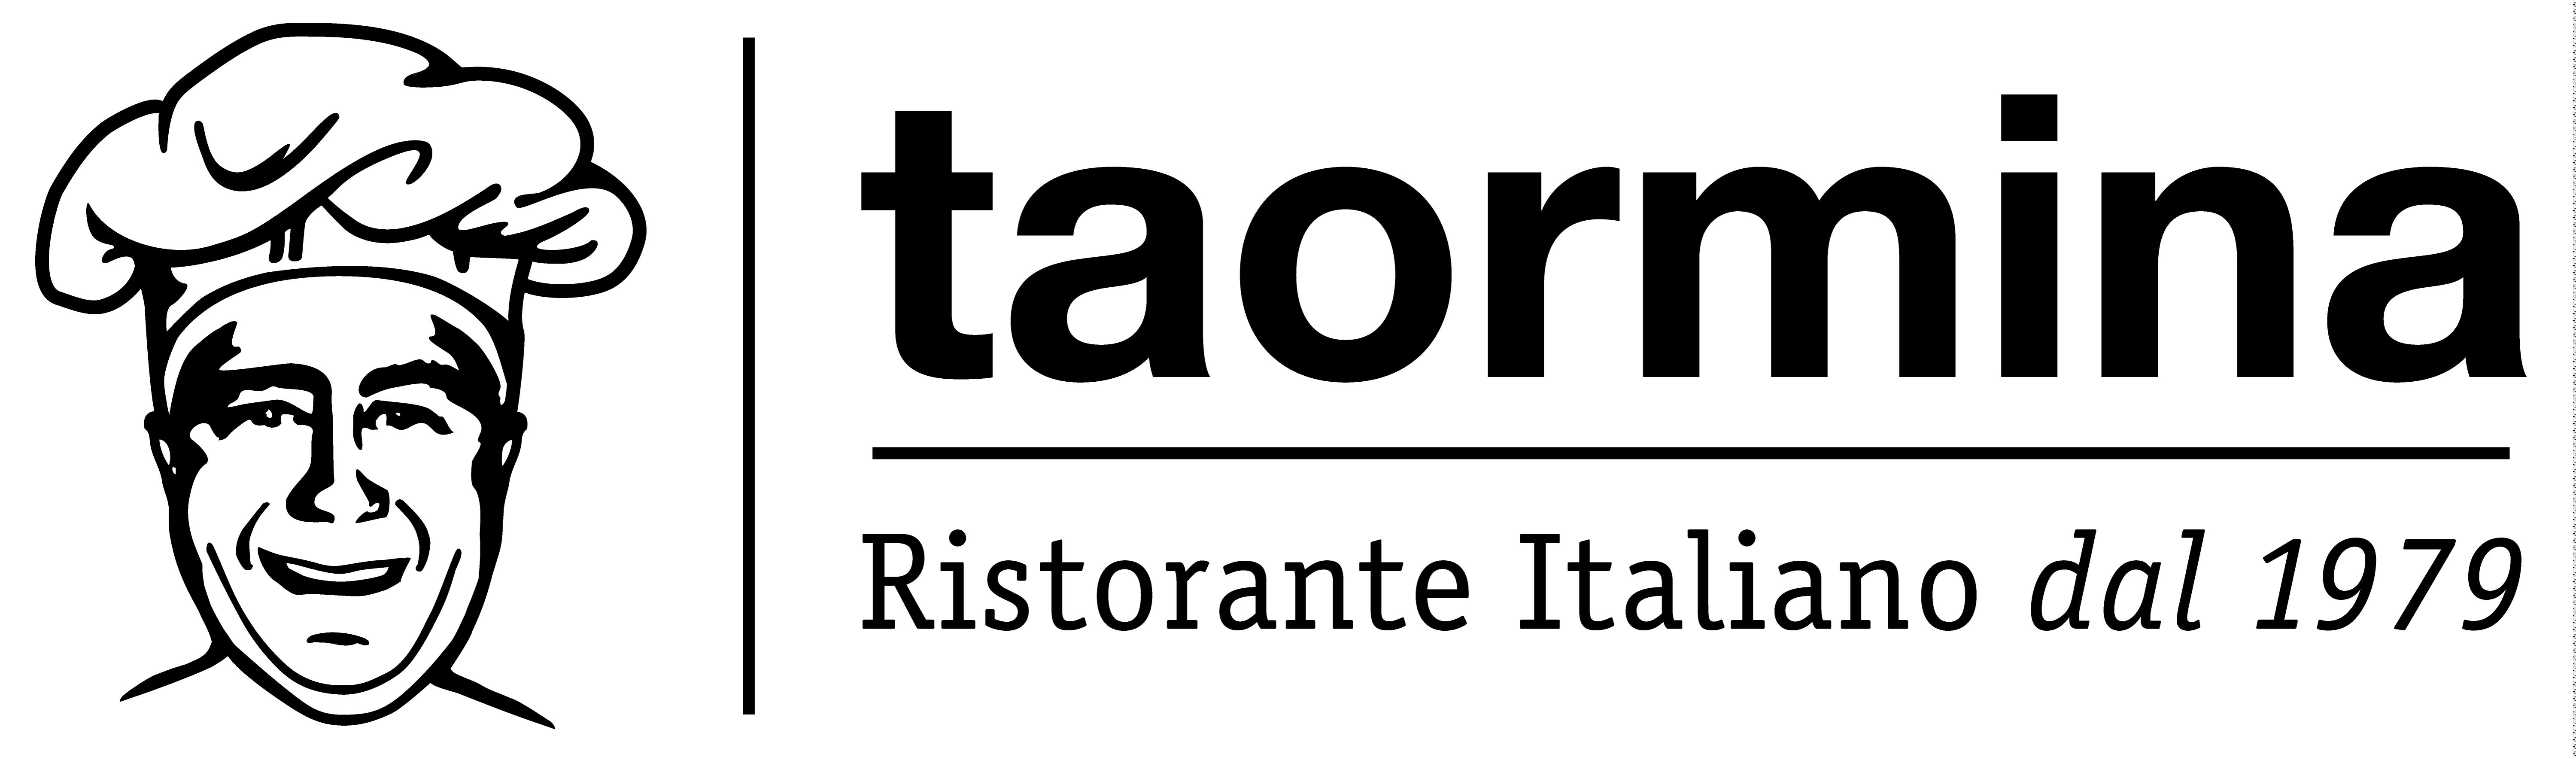 Logo_Taormina_Groß_Positiv